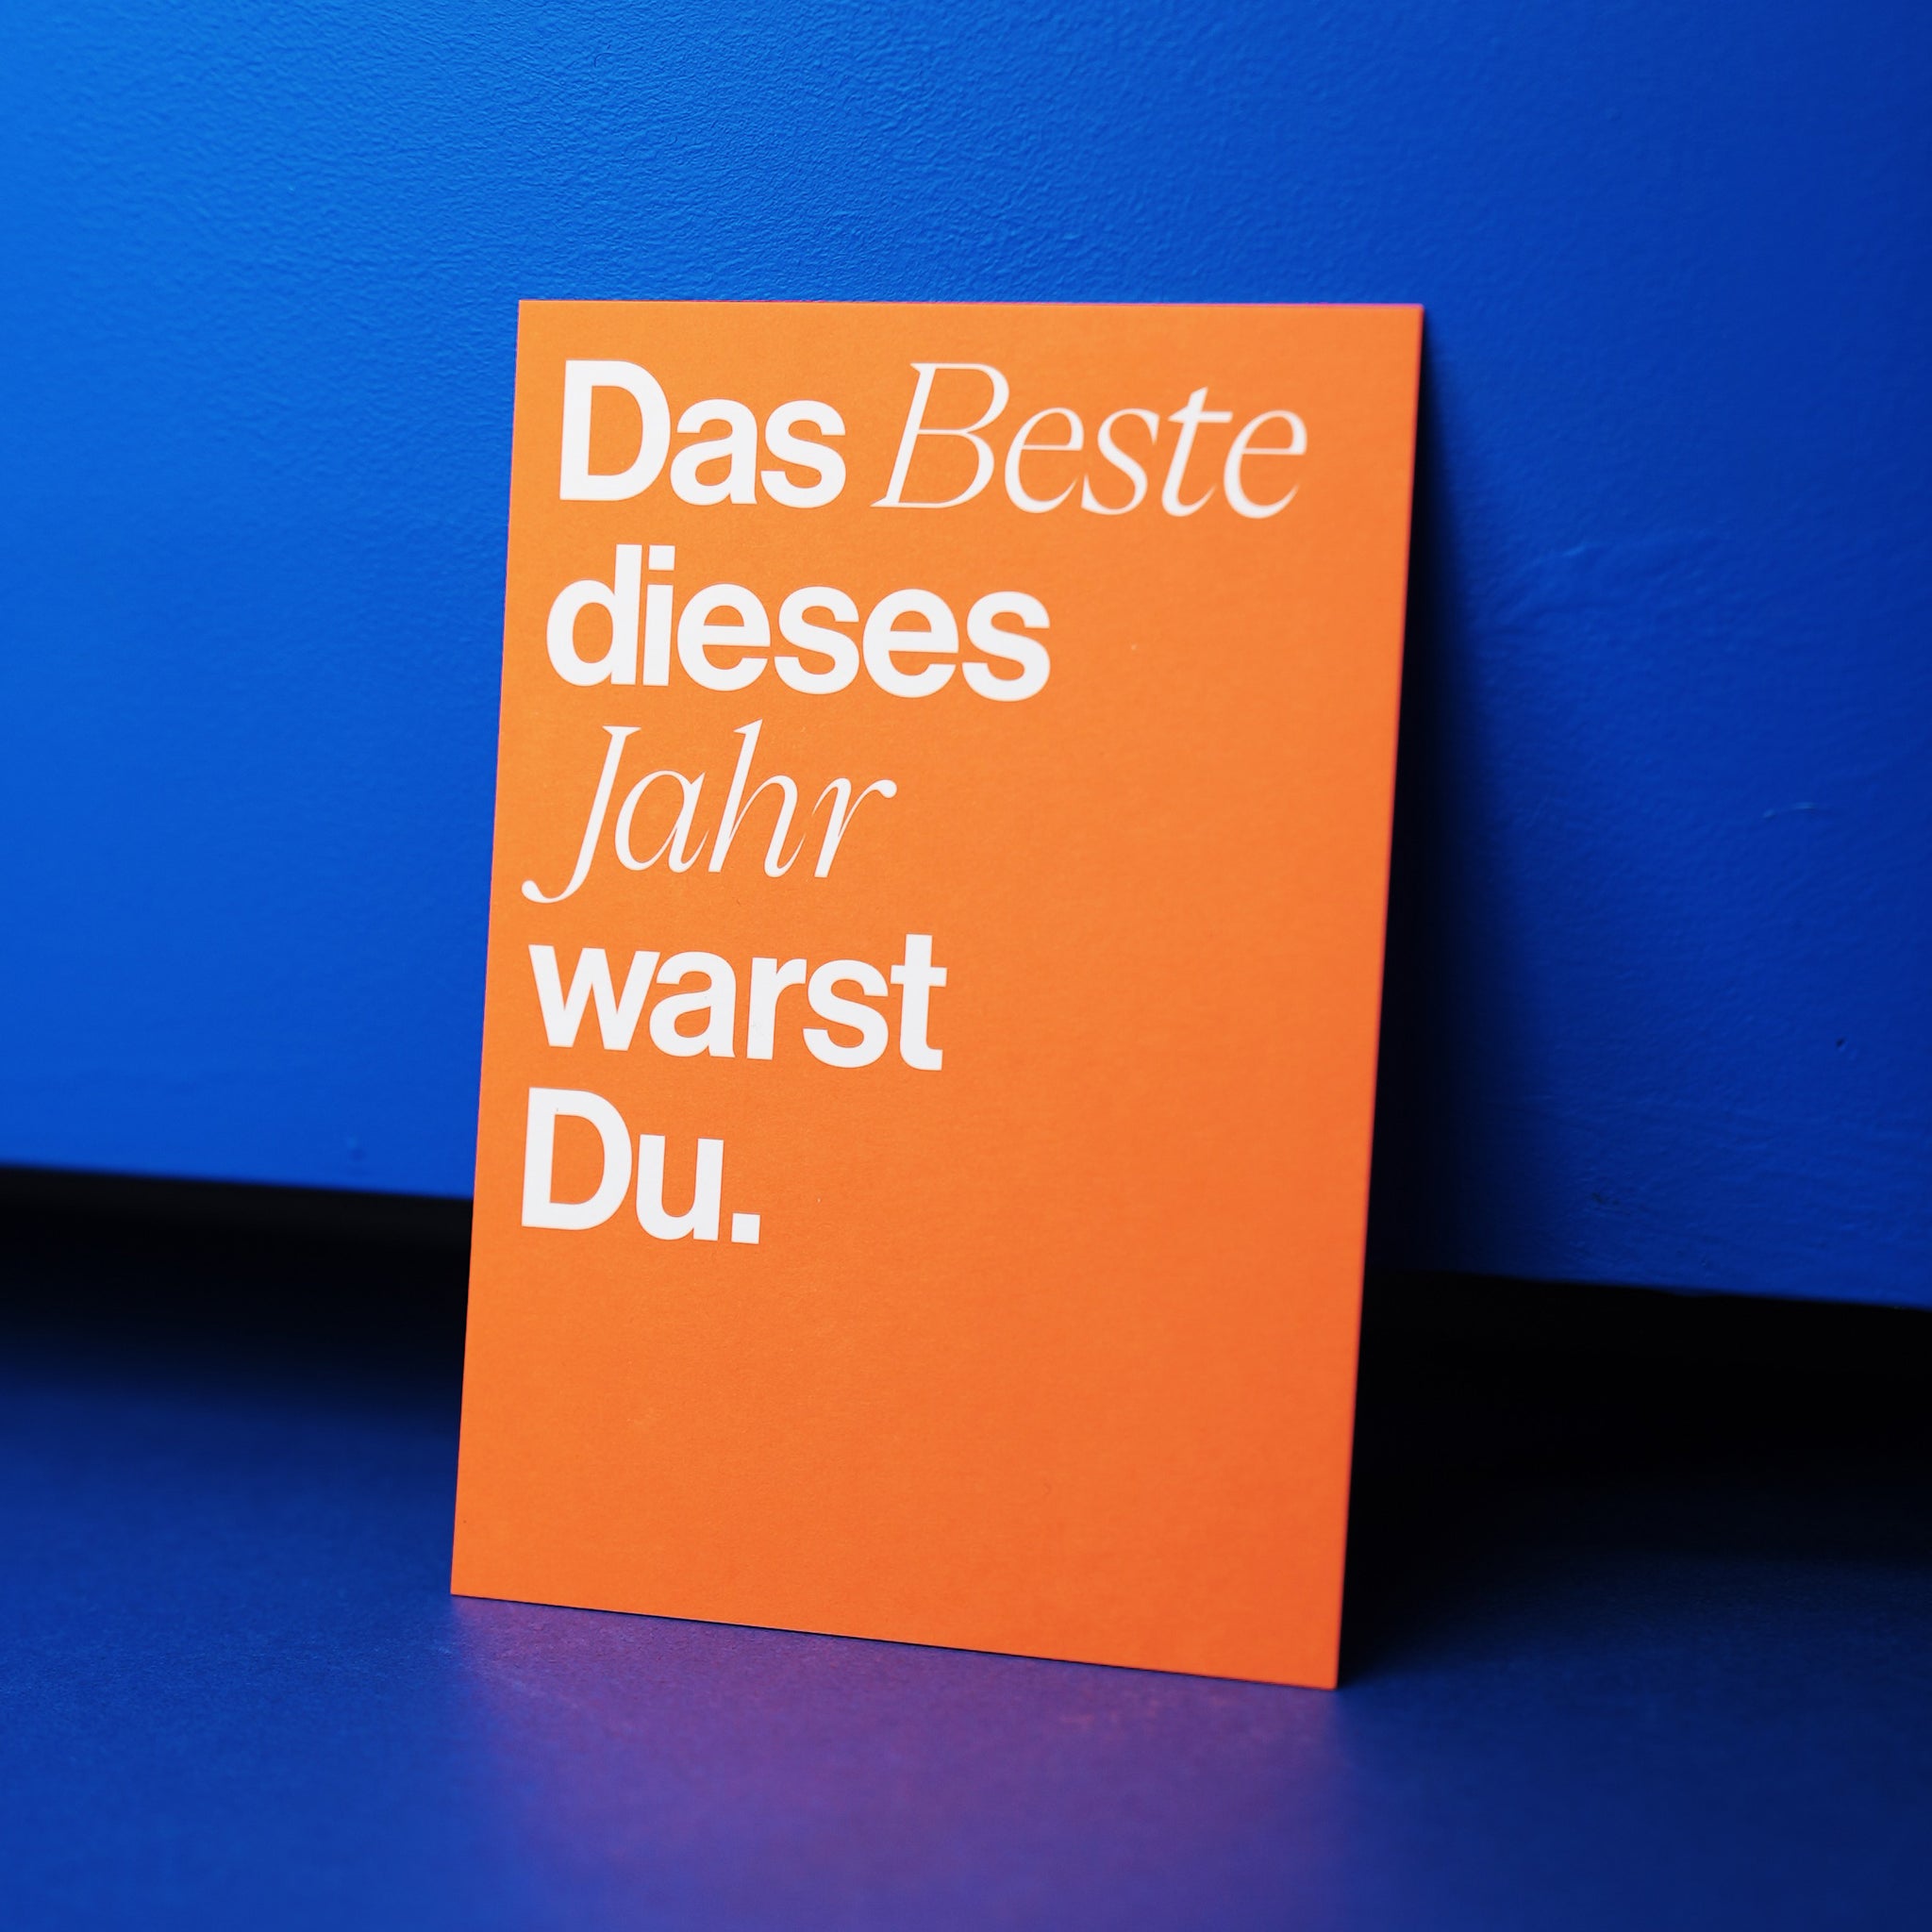 esistfreitag-Postkarte: Das Beste dieses Jahr warst du